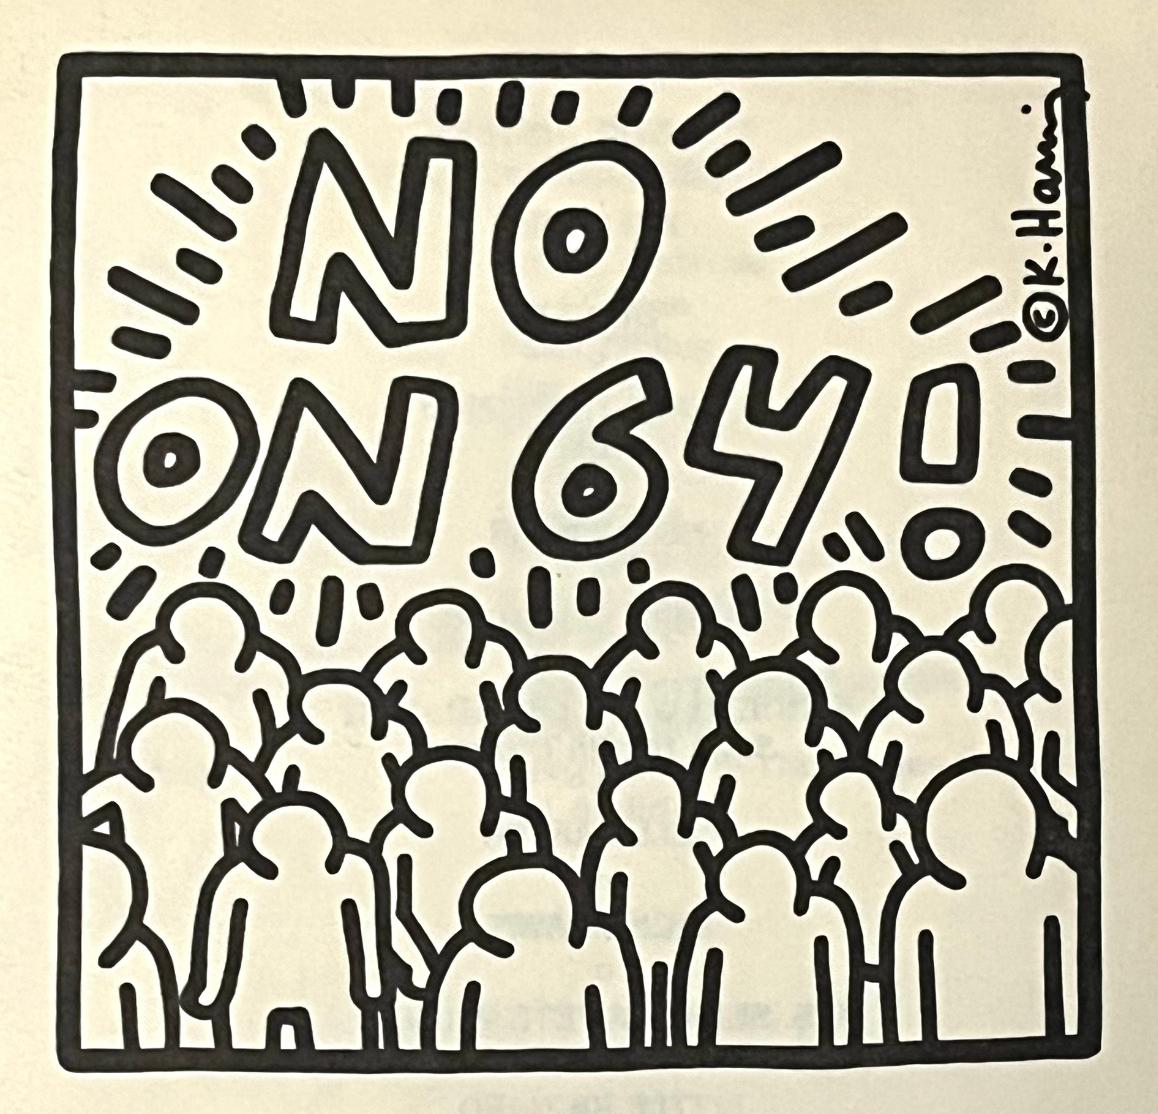 Keith Haring "No On 64" (Keith Haring 1986):
Eine seltene Vintage-Ankündigung von Keith Haring aus dem Jahr 1986, illustriert von Haring, um die Proposition 64 in Kalifornien anzuprangern. Die Befürworter der damaligen Abstimmung argumentierten,